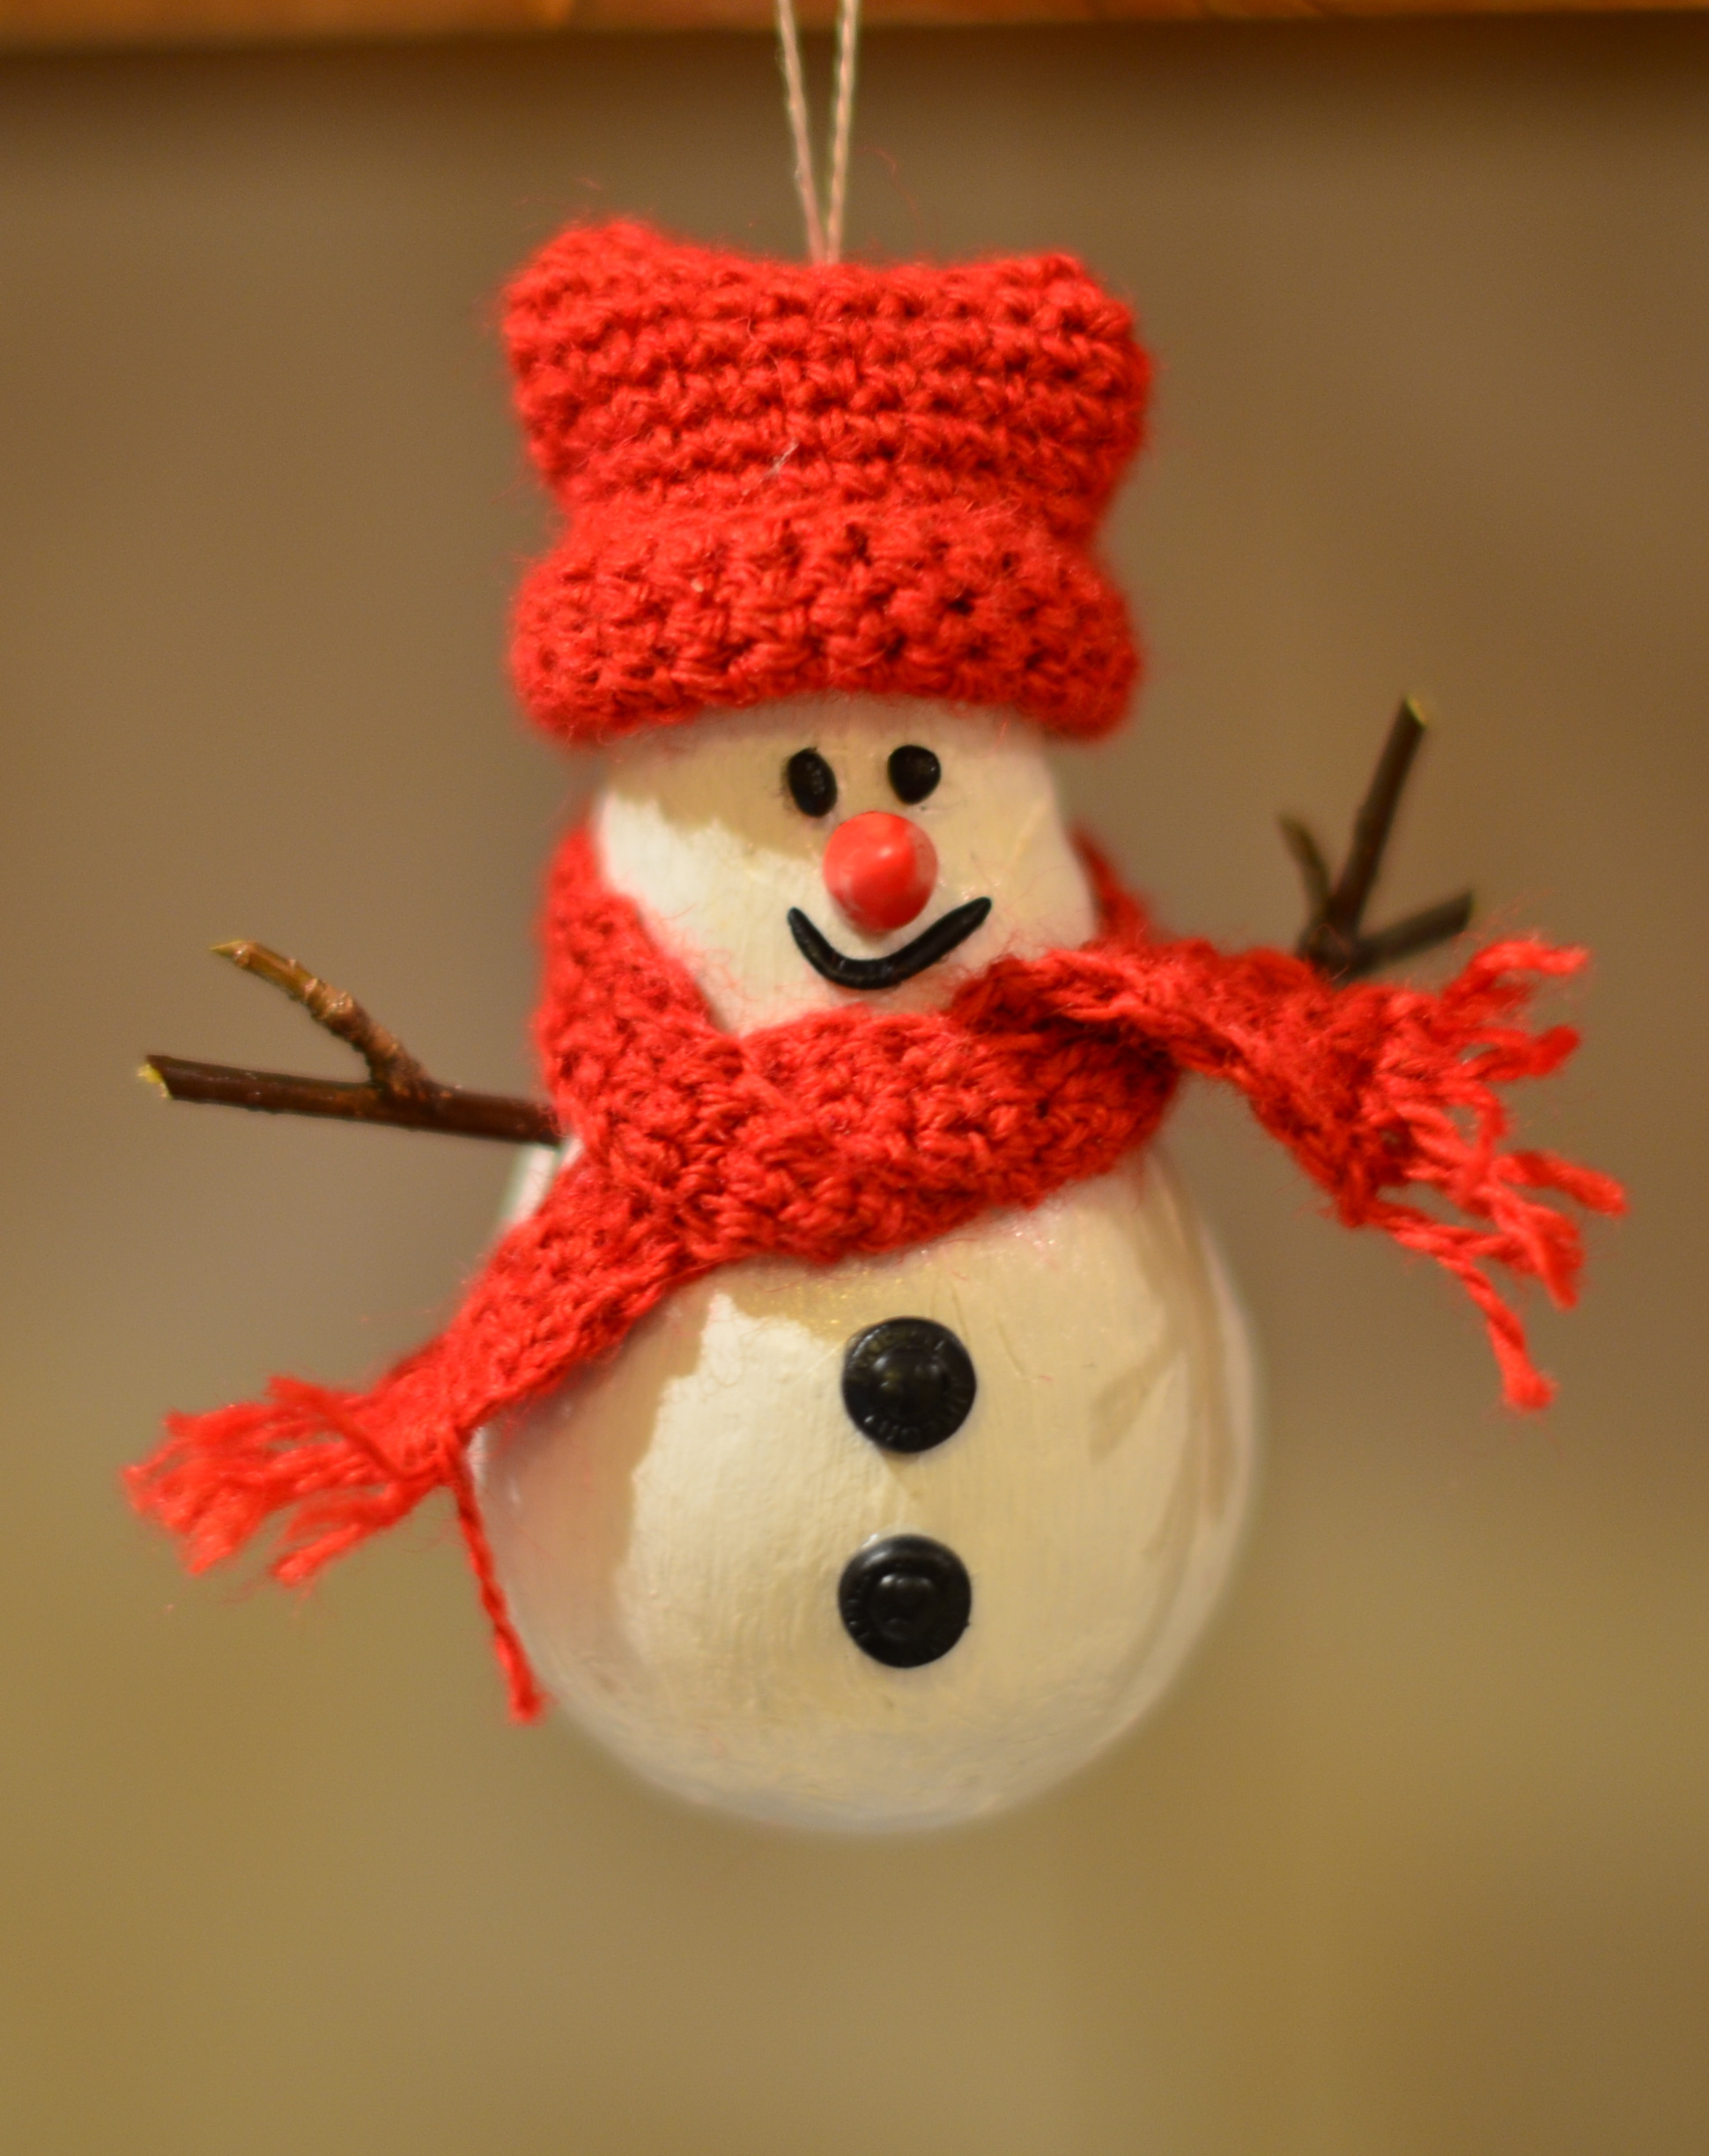 Елочная игрушка Империя поздравлений новогодняя символ года снеговик 4 шт